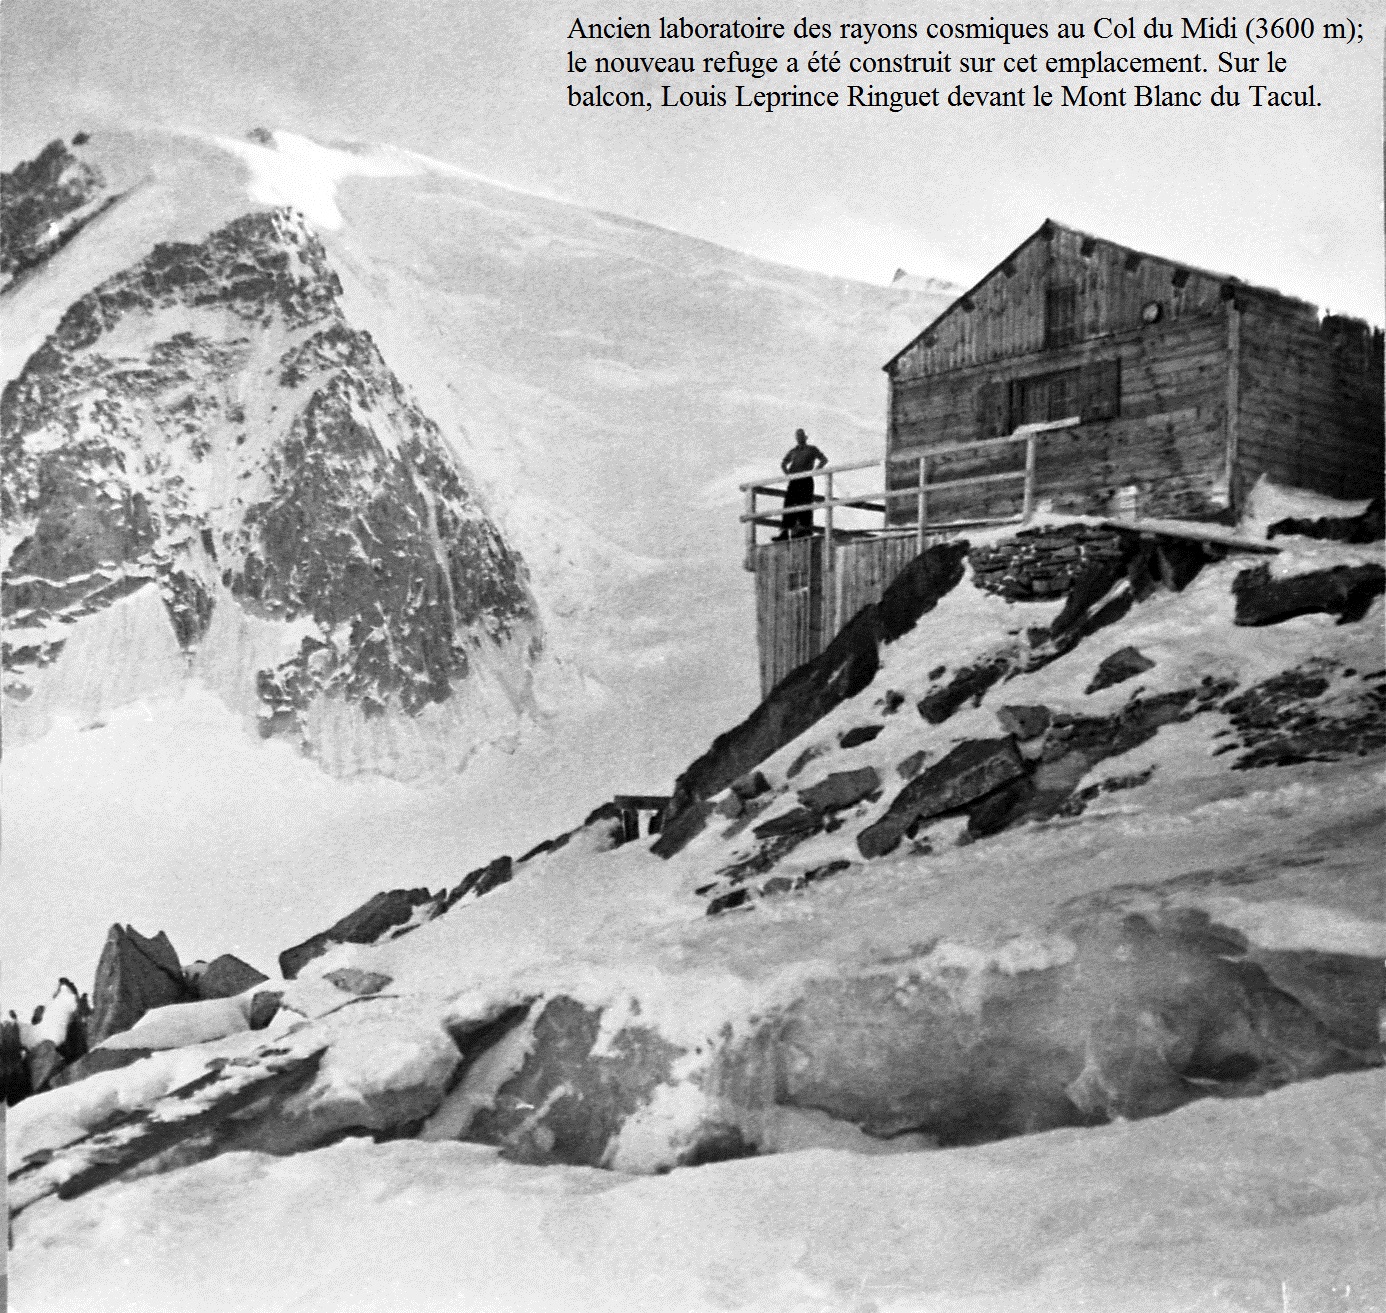 Ancien téléphérique et laboratoire des rayons cosmiques au Col du Midi (3600 m), massif du Mont Blanc